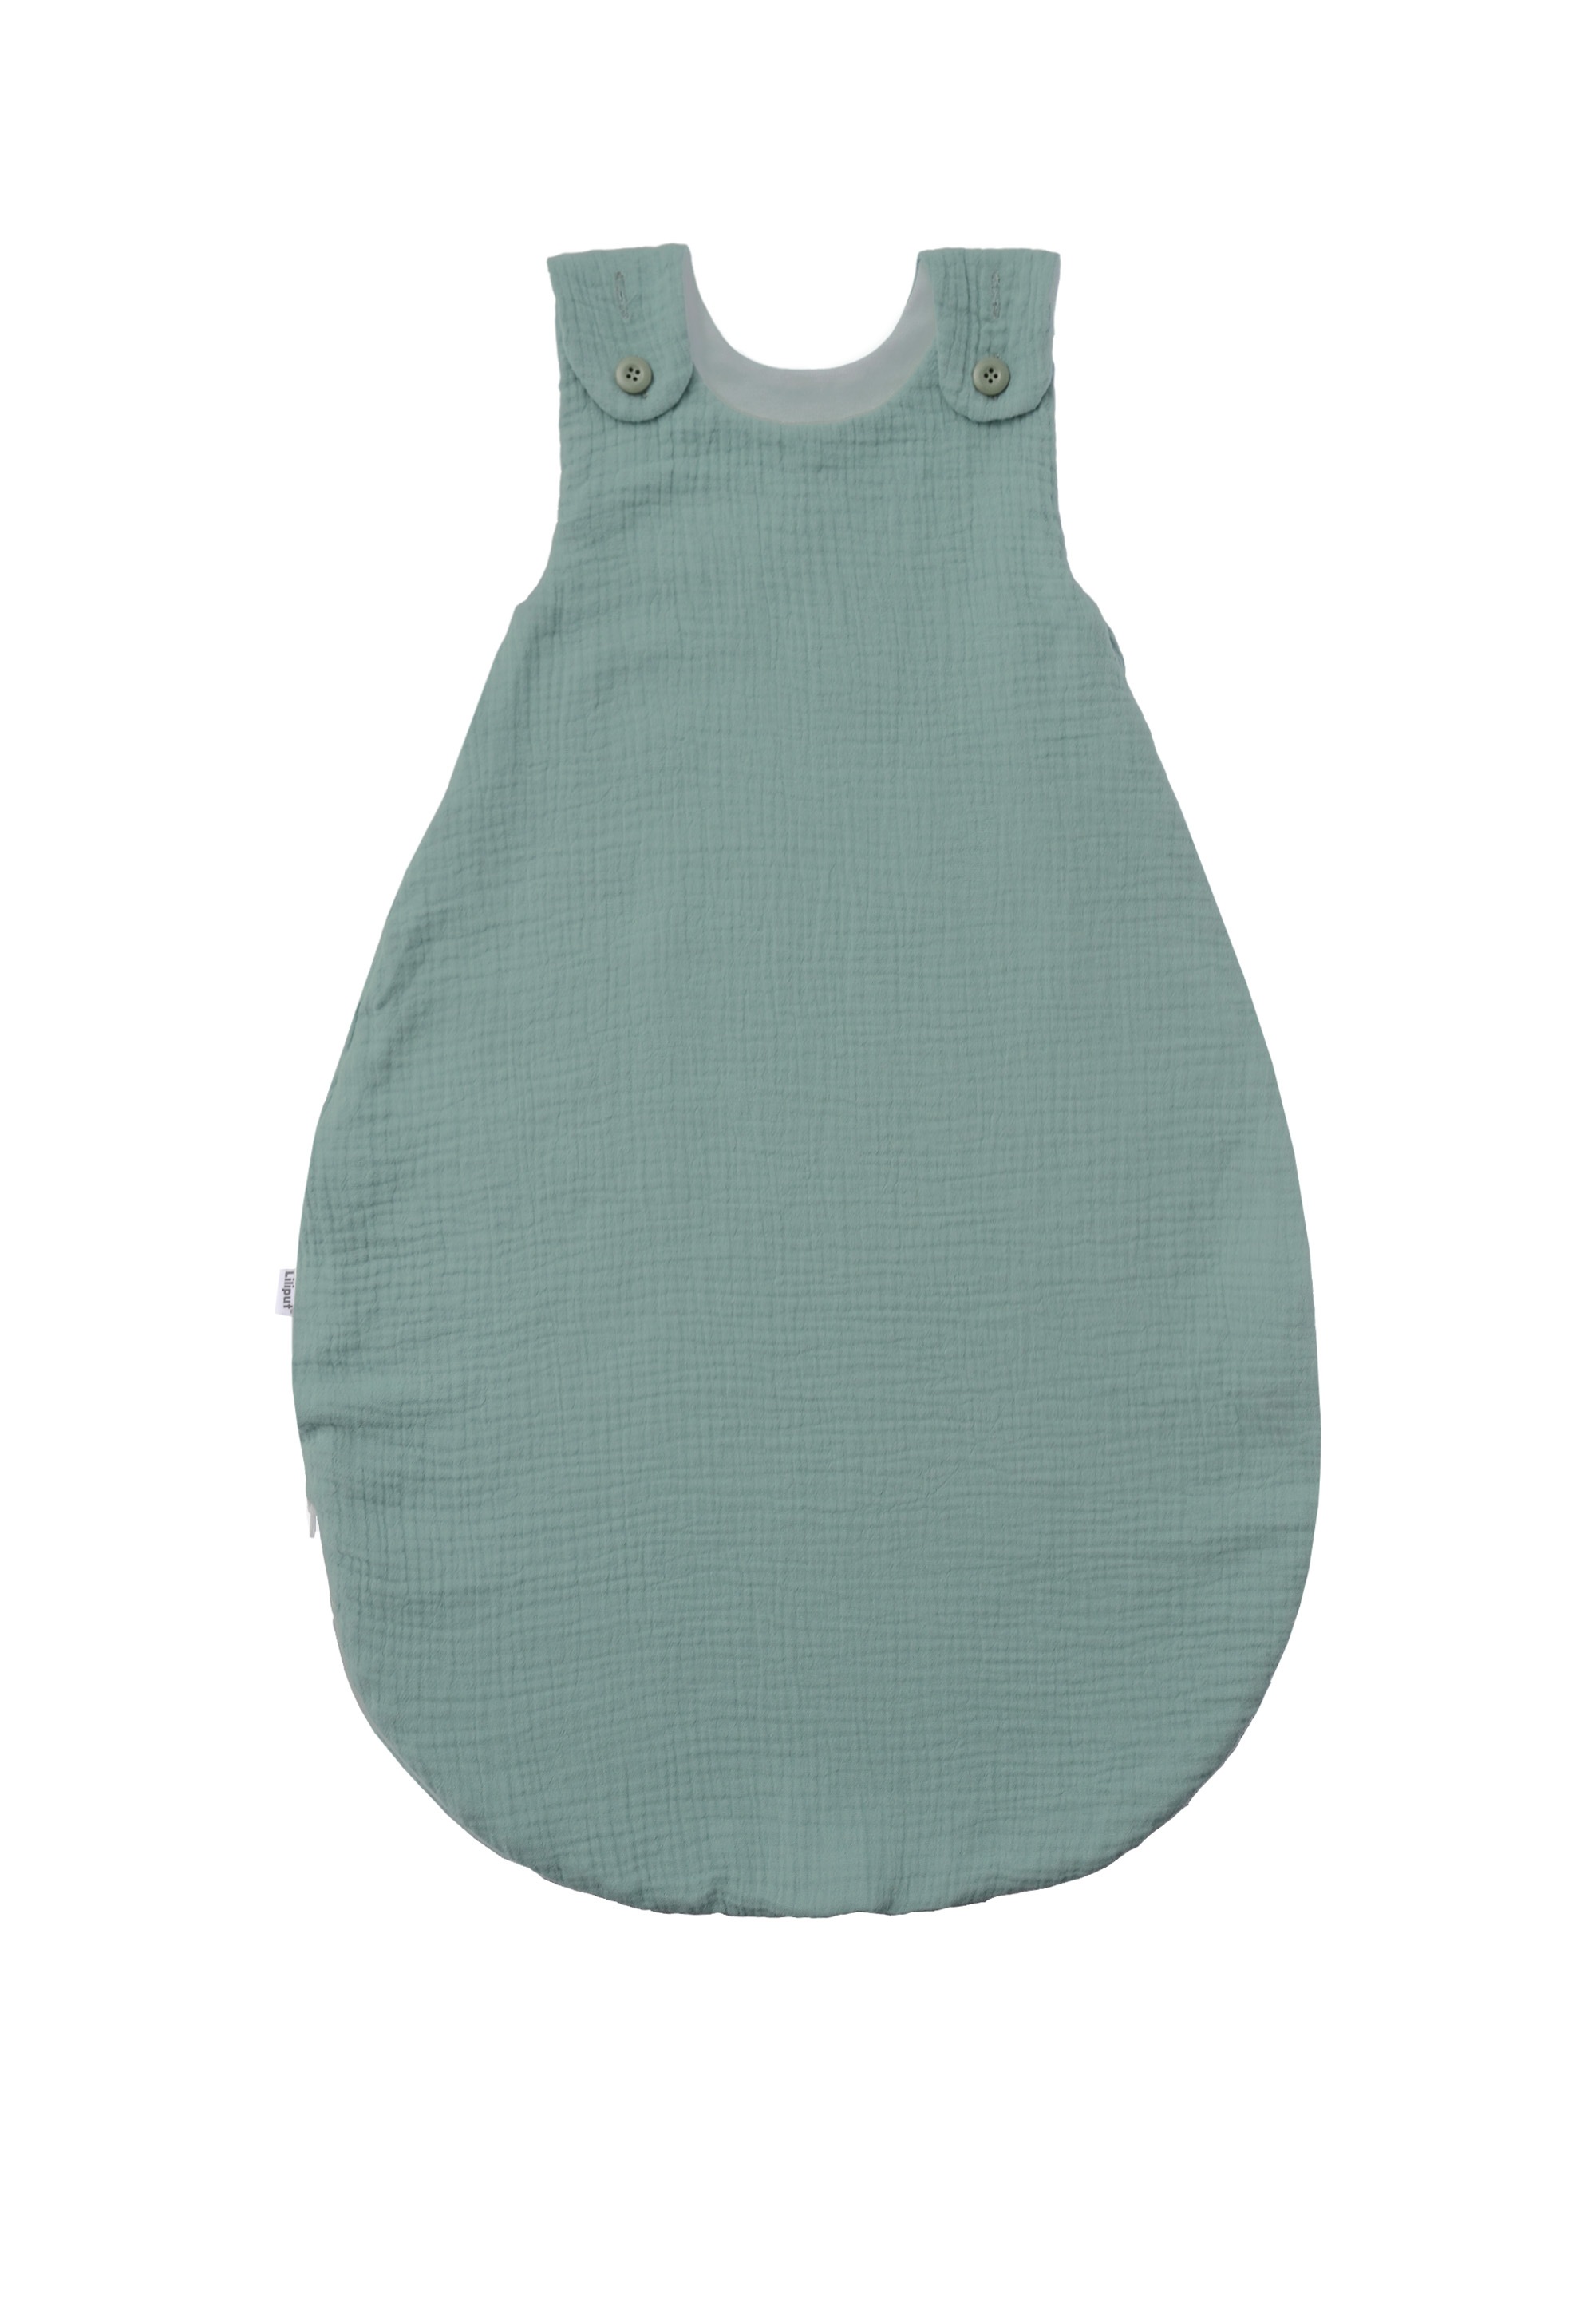 Babyschlafsack, mit Zwei-Wege-Reißverschluss